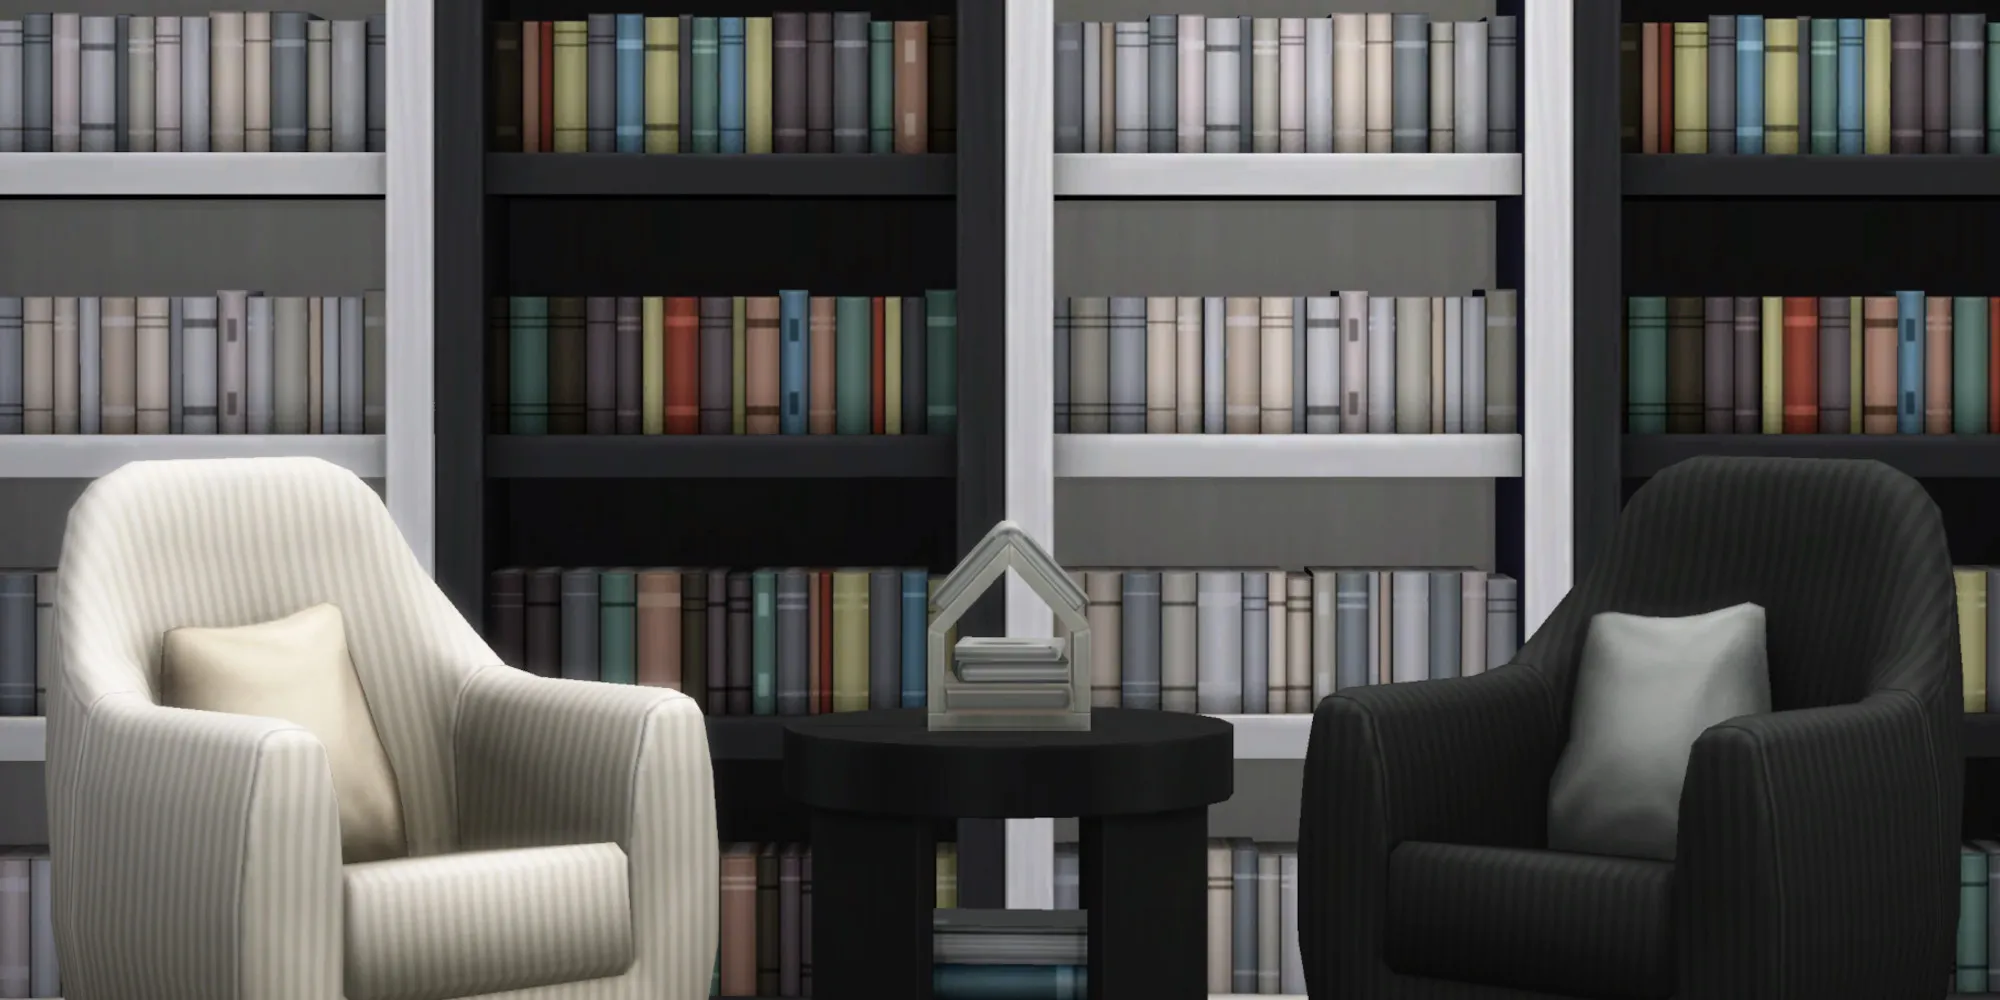 Pièce dans The Sims 4 avec des étagères remplies de livres du sol au plafond